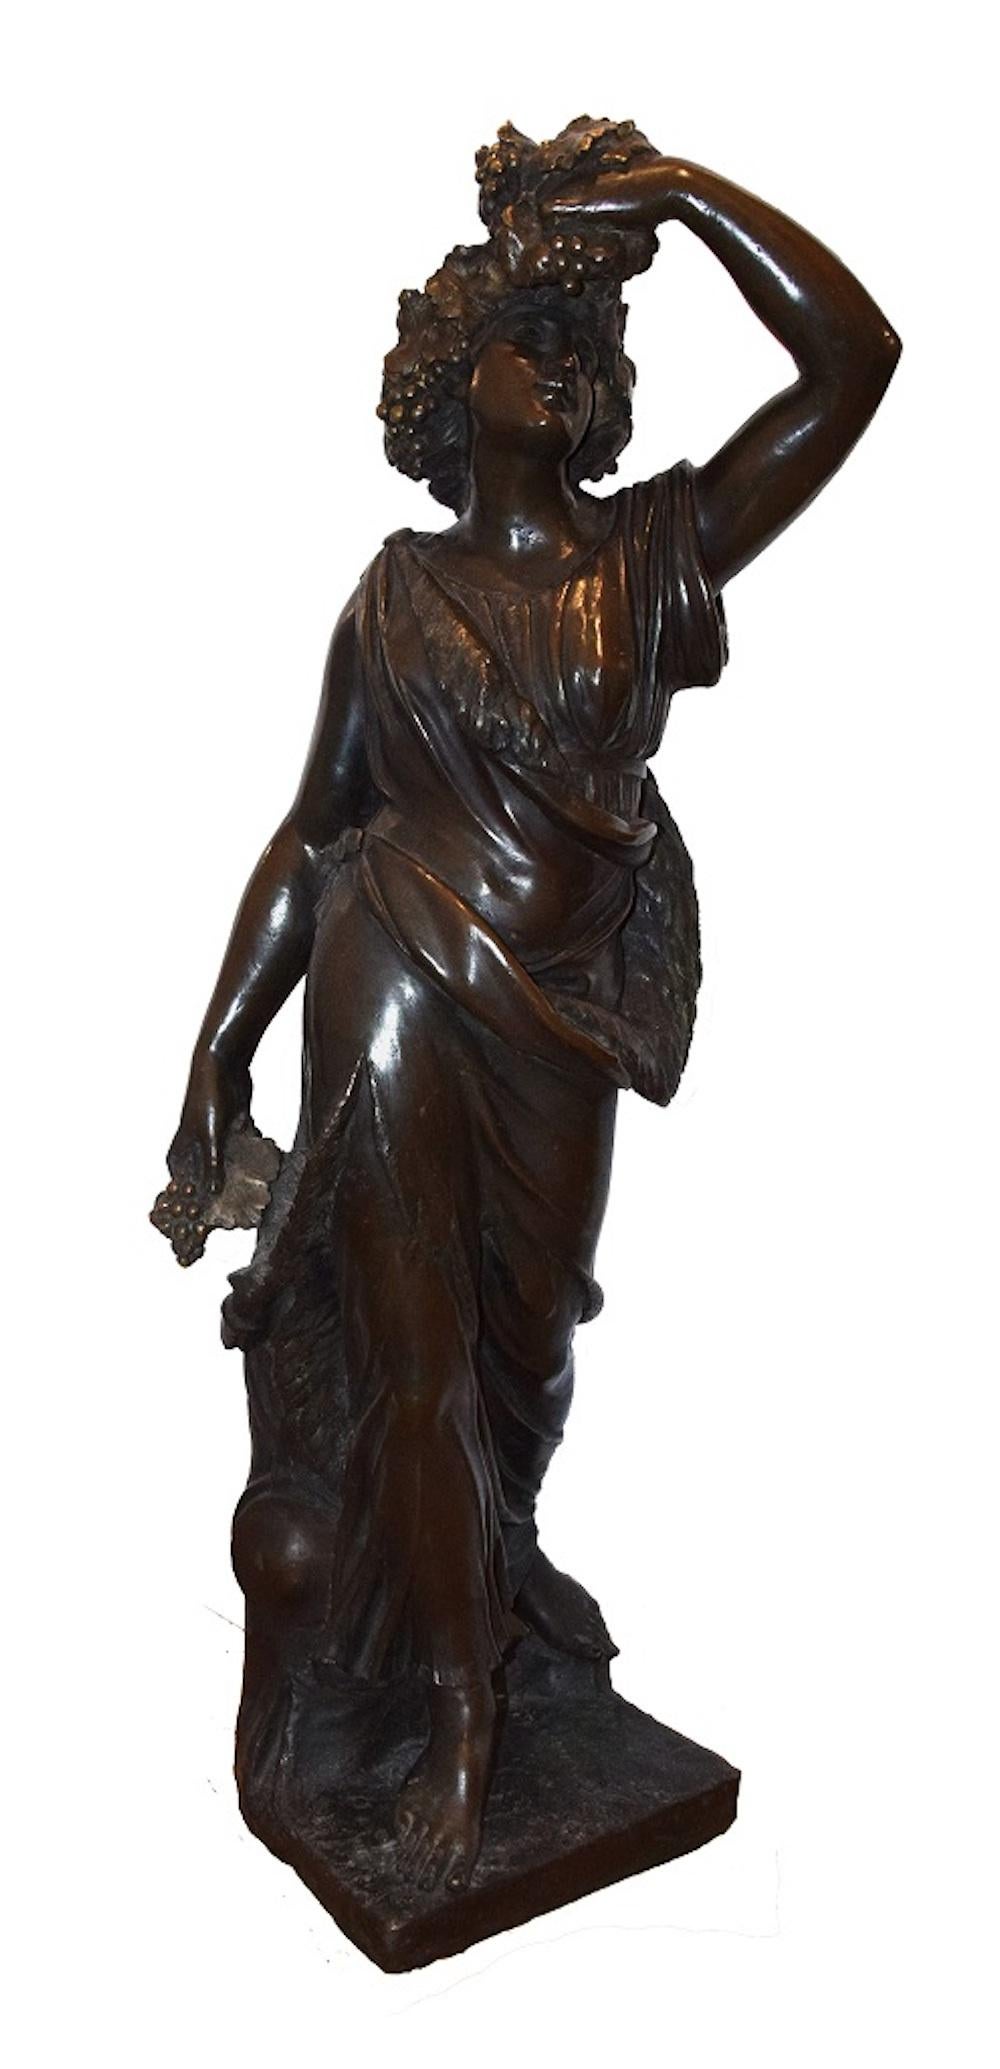 Follower des Bacchus - Bronzeskulptur eines unbekannten italienischen Künstlers Ende 1800